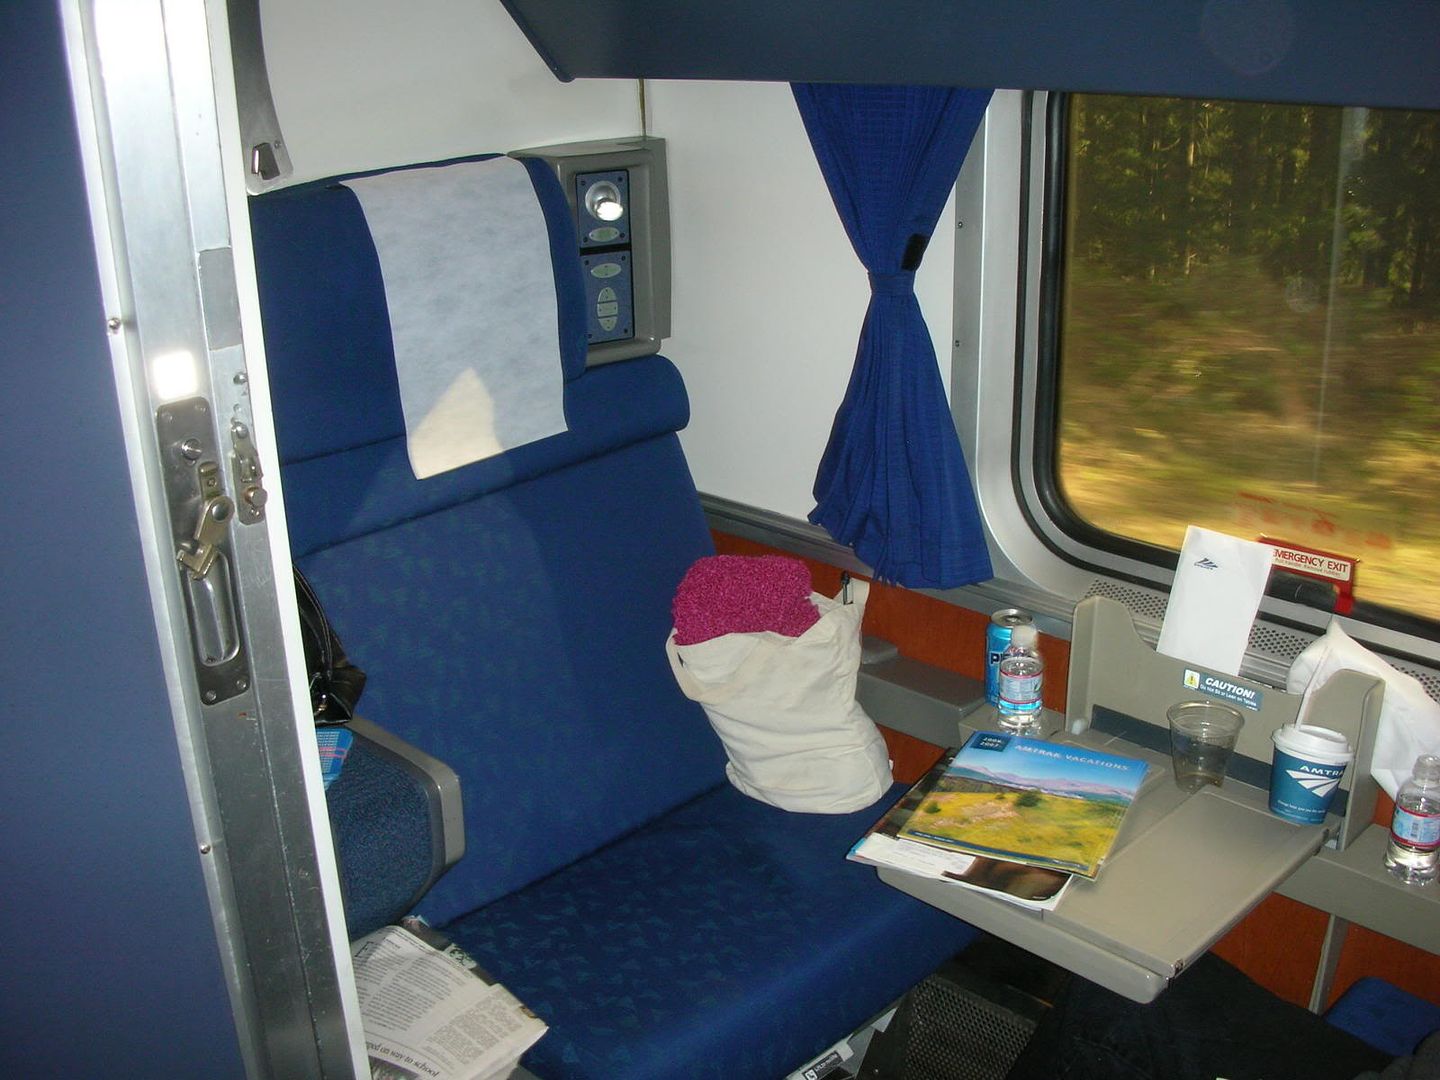 amtrak sleeper car photo: Amtrak sleeper  car a981.jpg